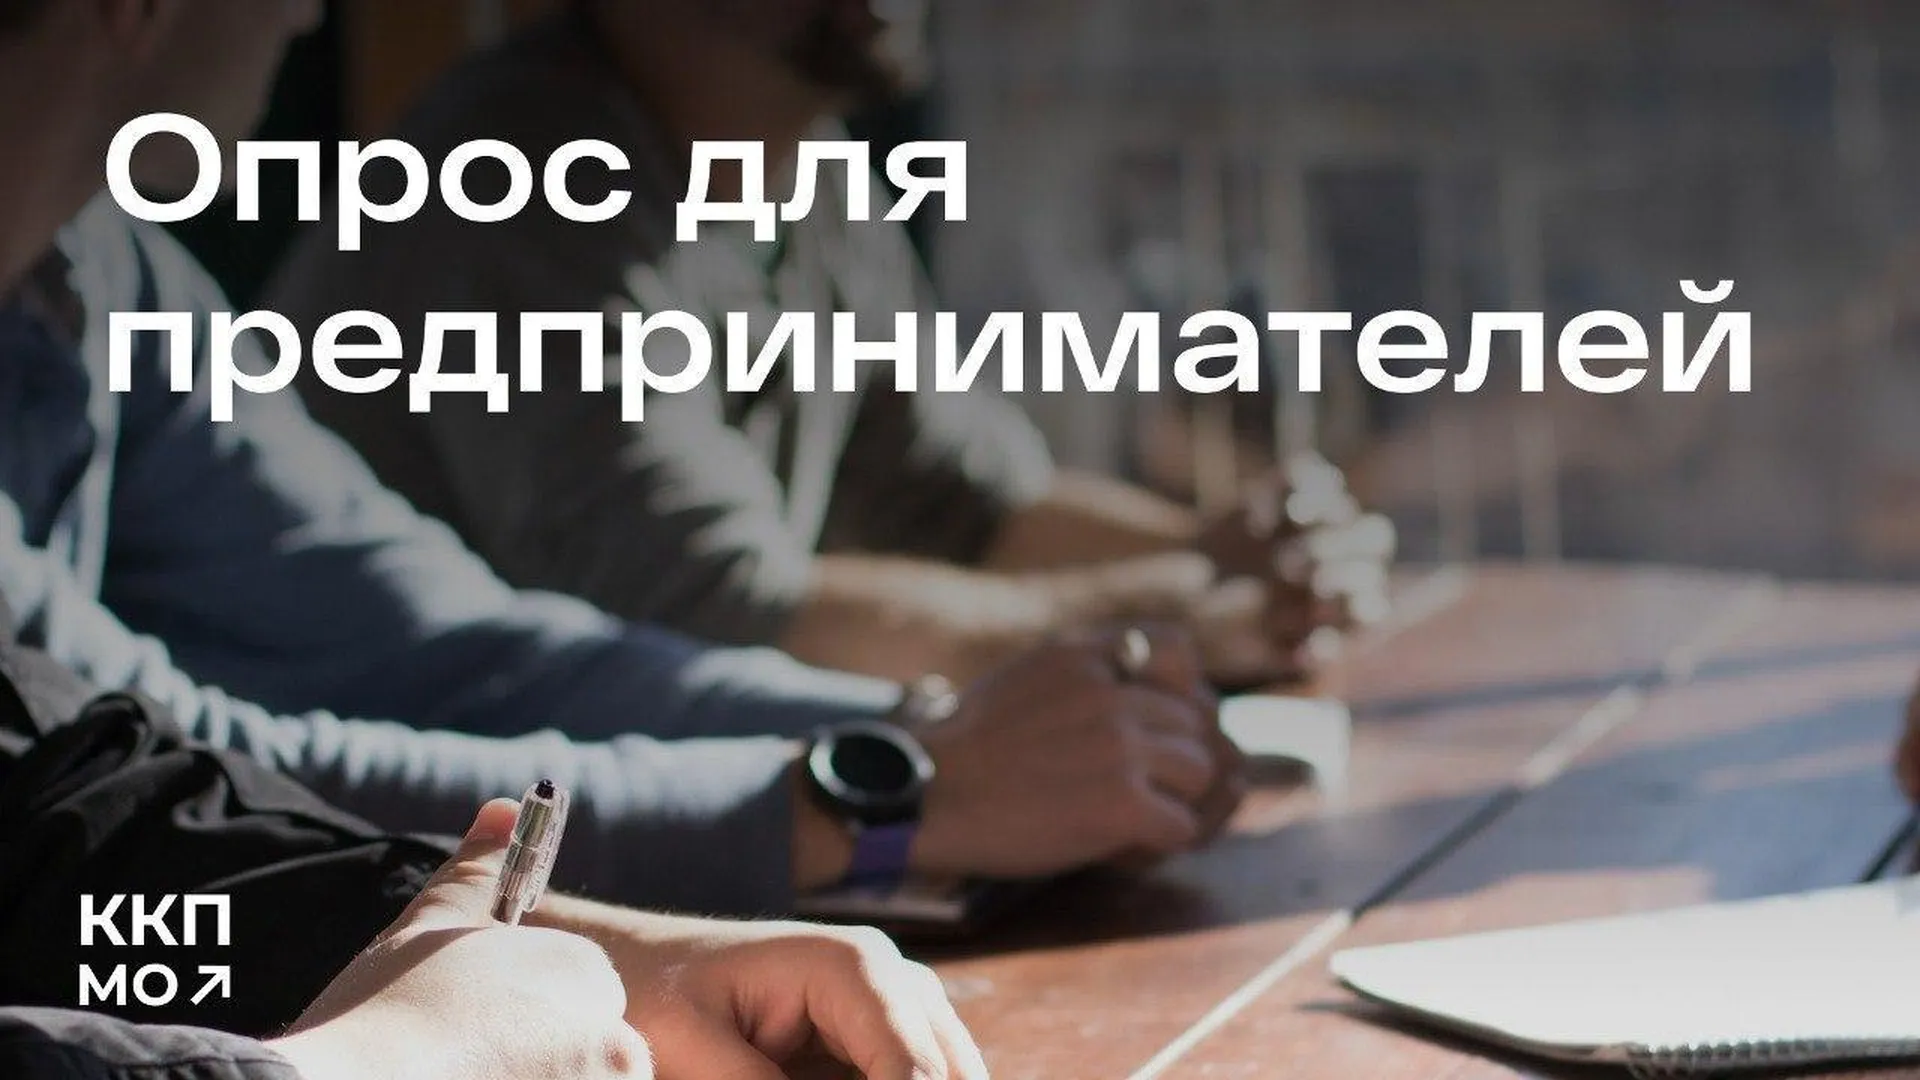 Комитет по конкурентной политике Подмосковья запустил опрос для предпринимателей